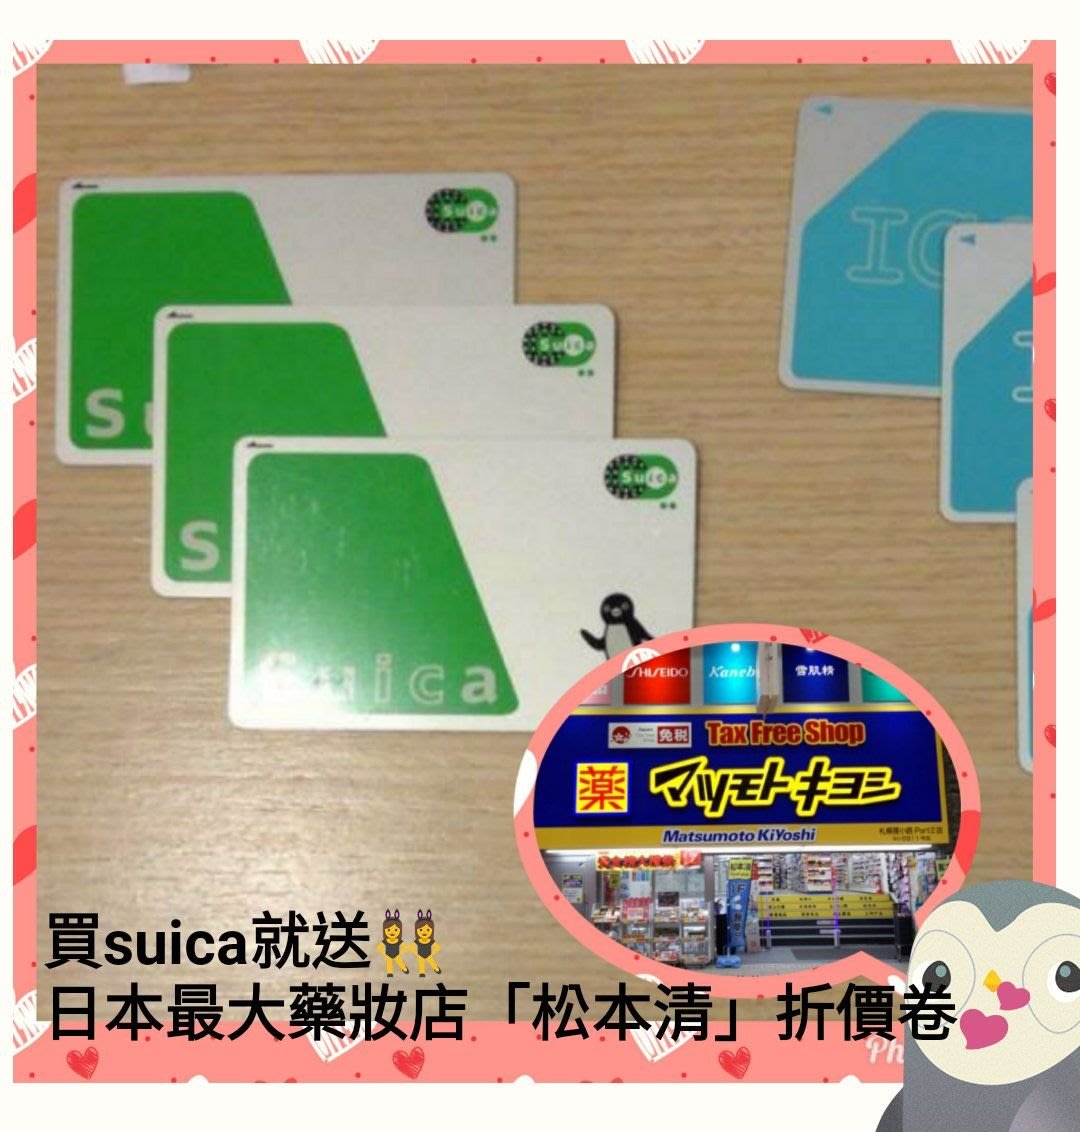 [全新] 日本西瓜卡現貨 SUICA 日本東京交通卡, 興趣及遊戲, 旅行, 旅遊 - 旅行必需品及用品 - Carousell